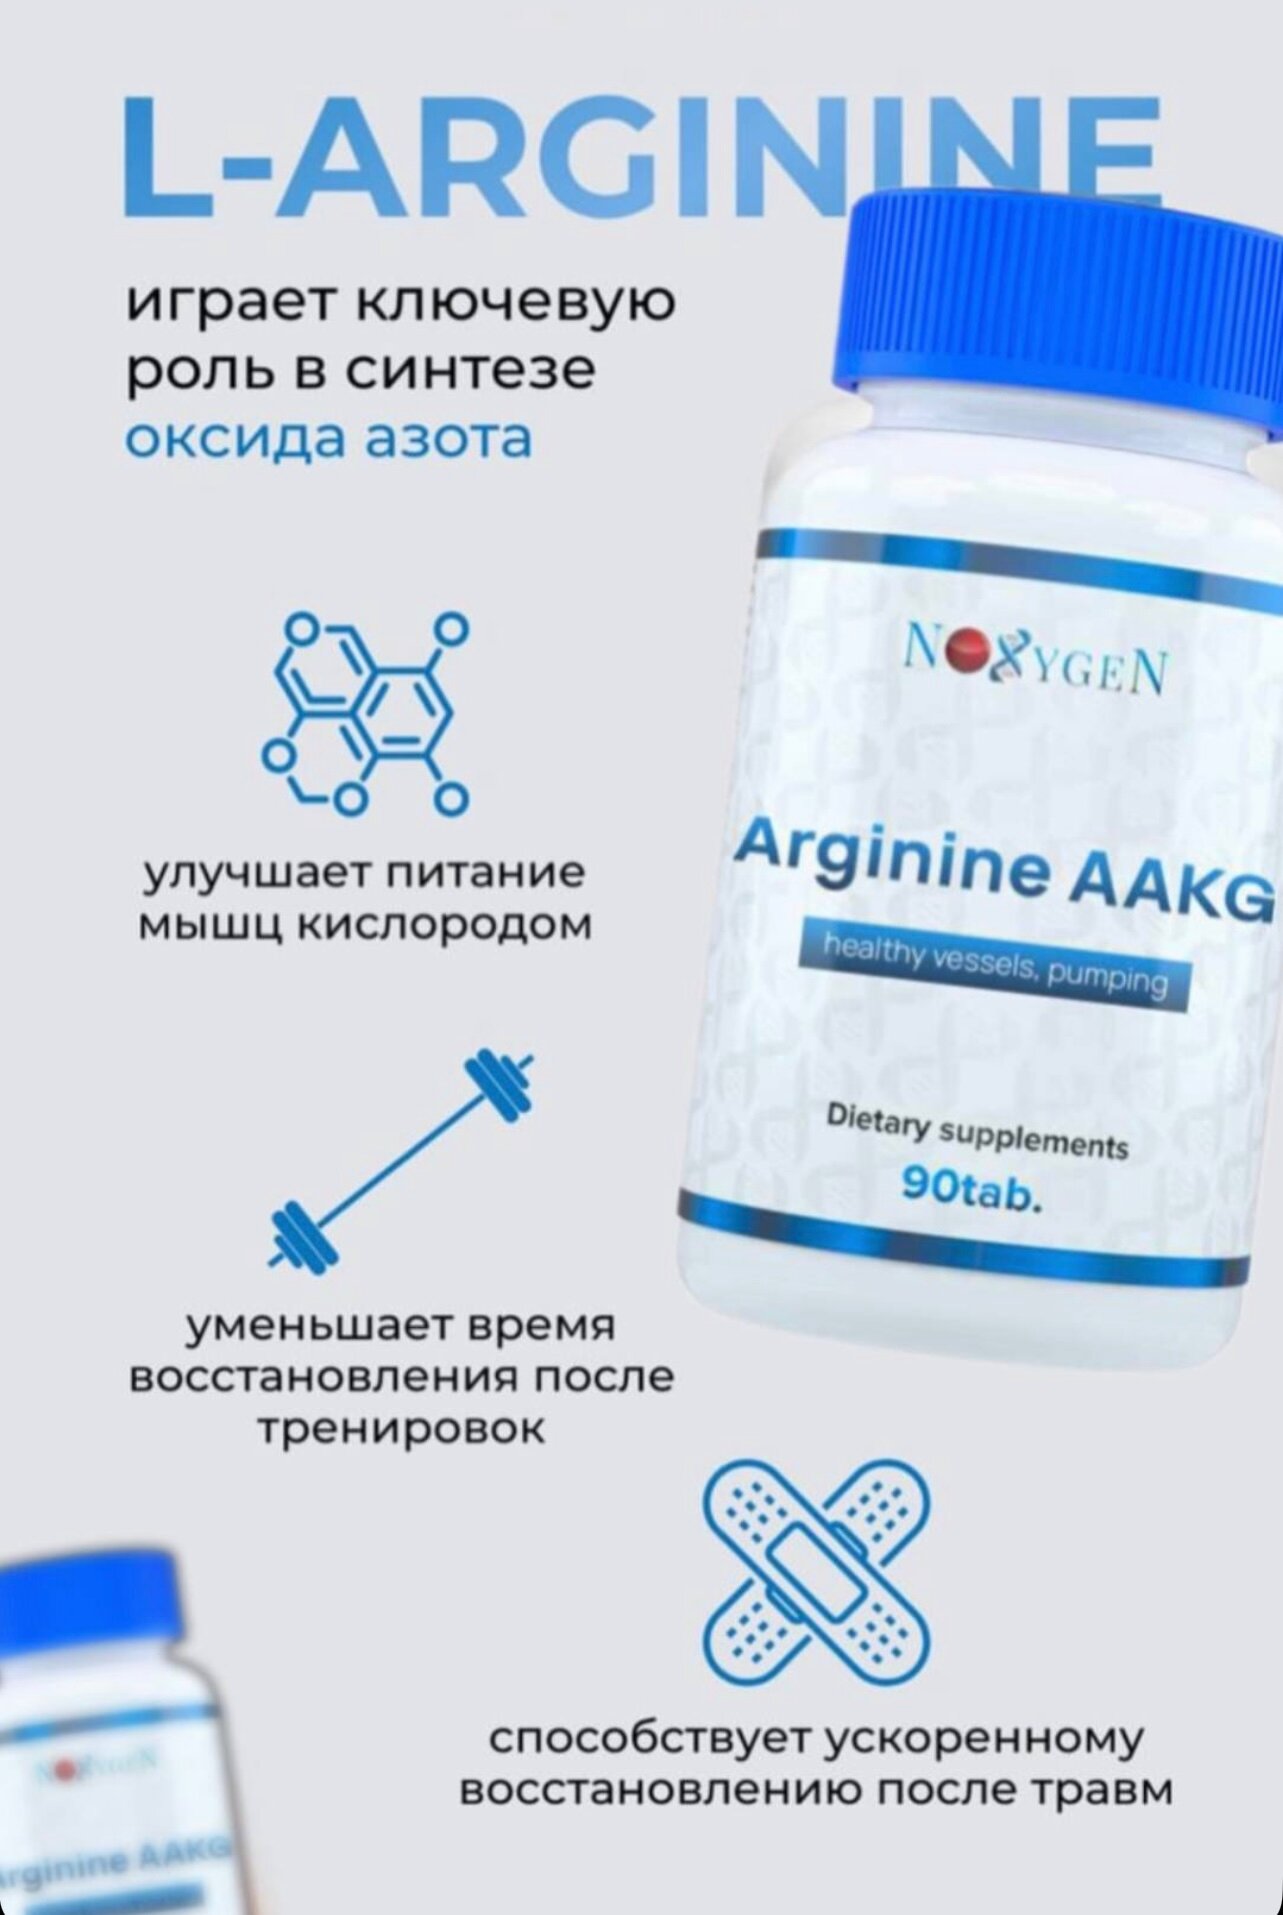 Arginine AAKG аминокислота 1000мг 90 таб. предтренировочный комплекс для пампа, повышения выносливости и силовых показателей